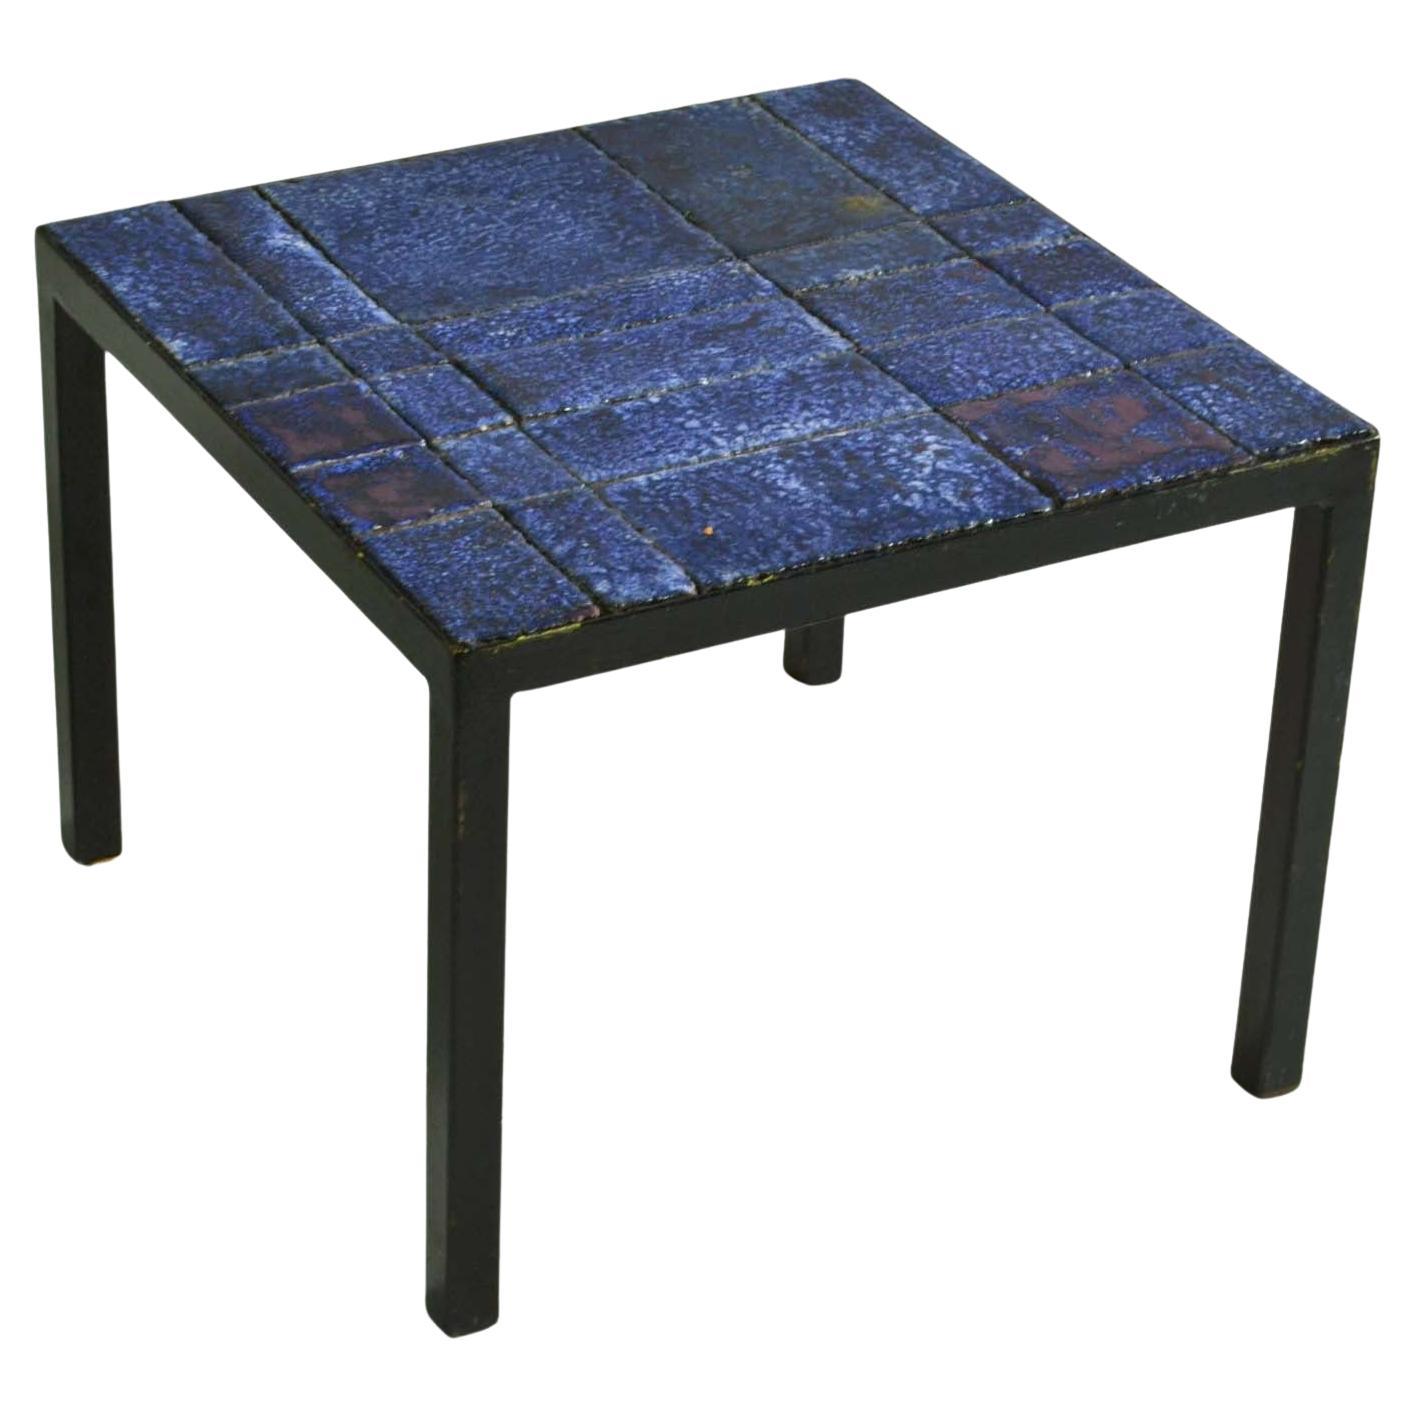 Quadratischer italienischer Beistelltisch aus blauen Keramikfliesen auf schwarzem Metallrahmen